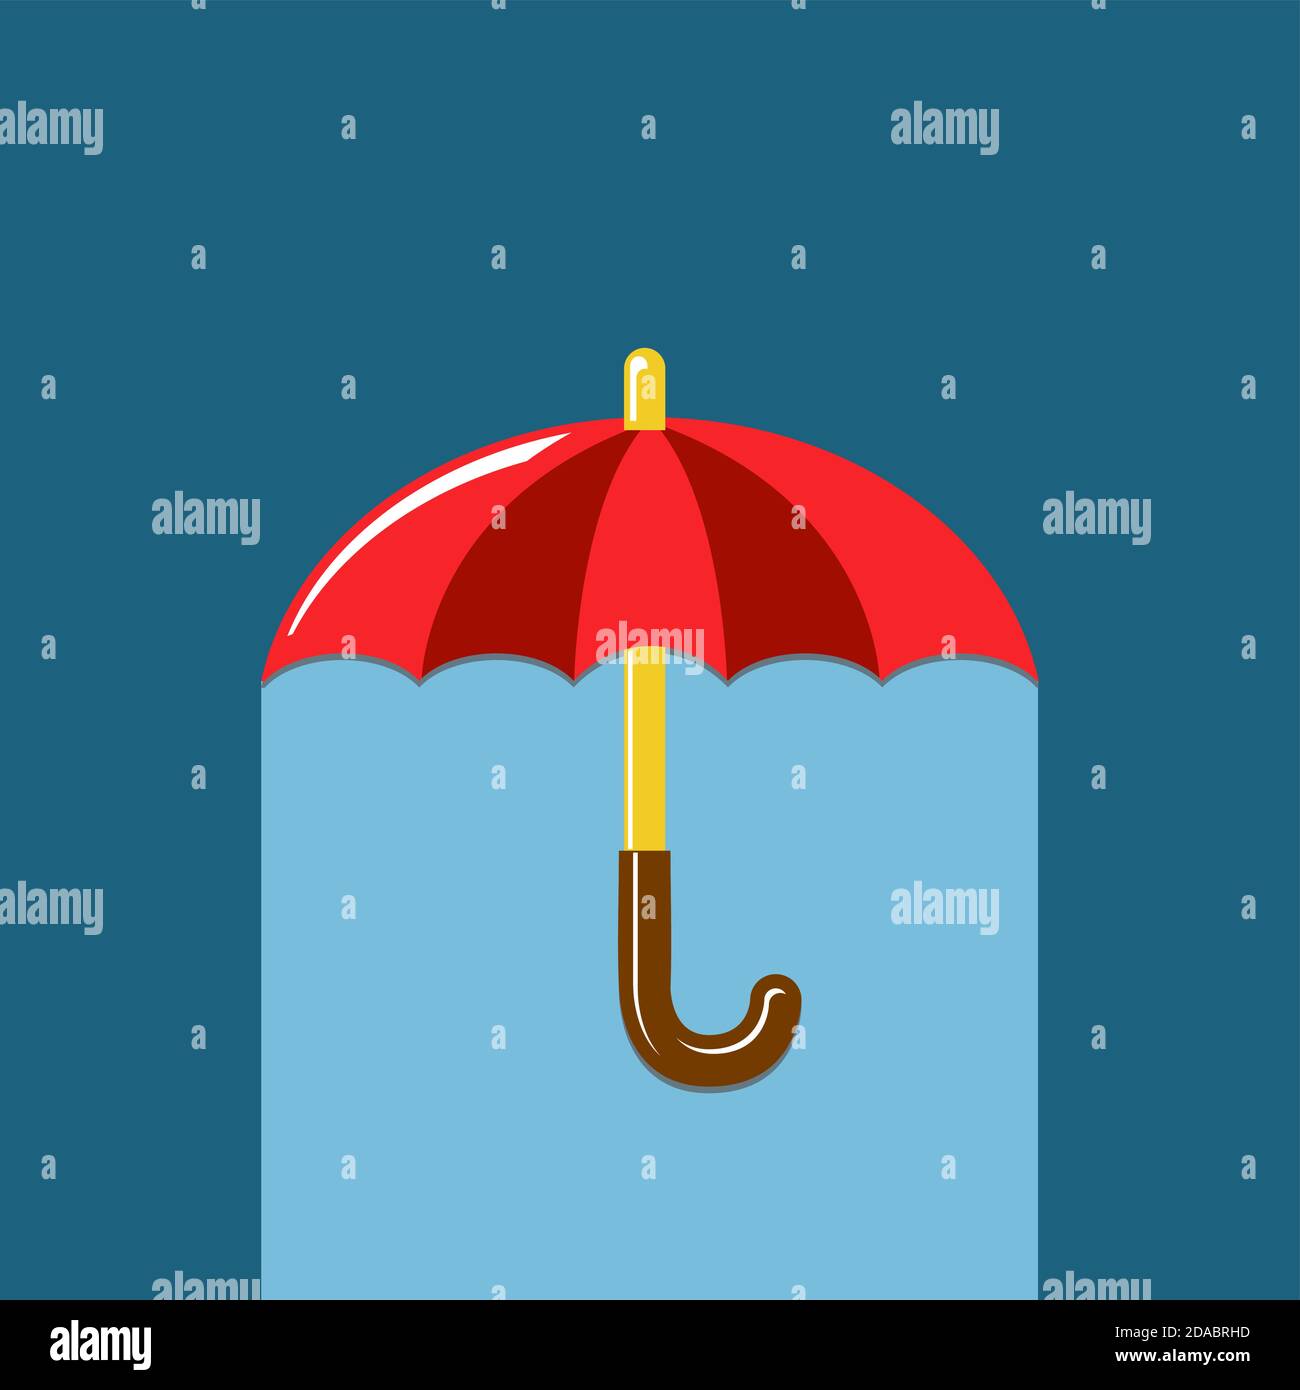 Roter, offener Regenschirm auf blauem Hintergrund. Flaches Design, Vektor Stock Vektor